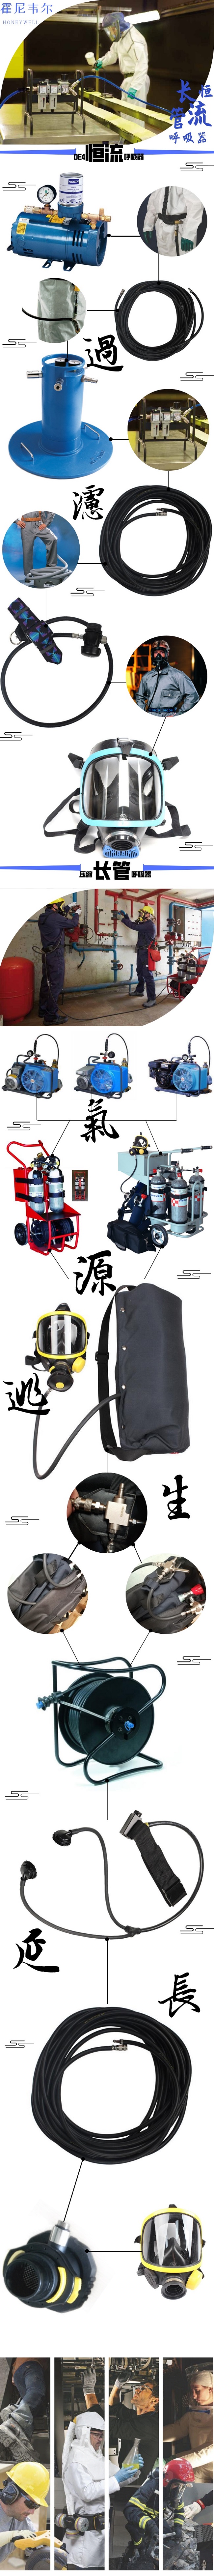 长管空气呼吸器 长管式空气呼吸器 移动式长管空气呼吸器 移动供气源 移动小车空气呼吸器 移动型长管呼吸器 4瓶空气呼吸器